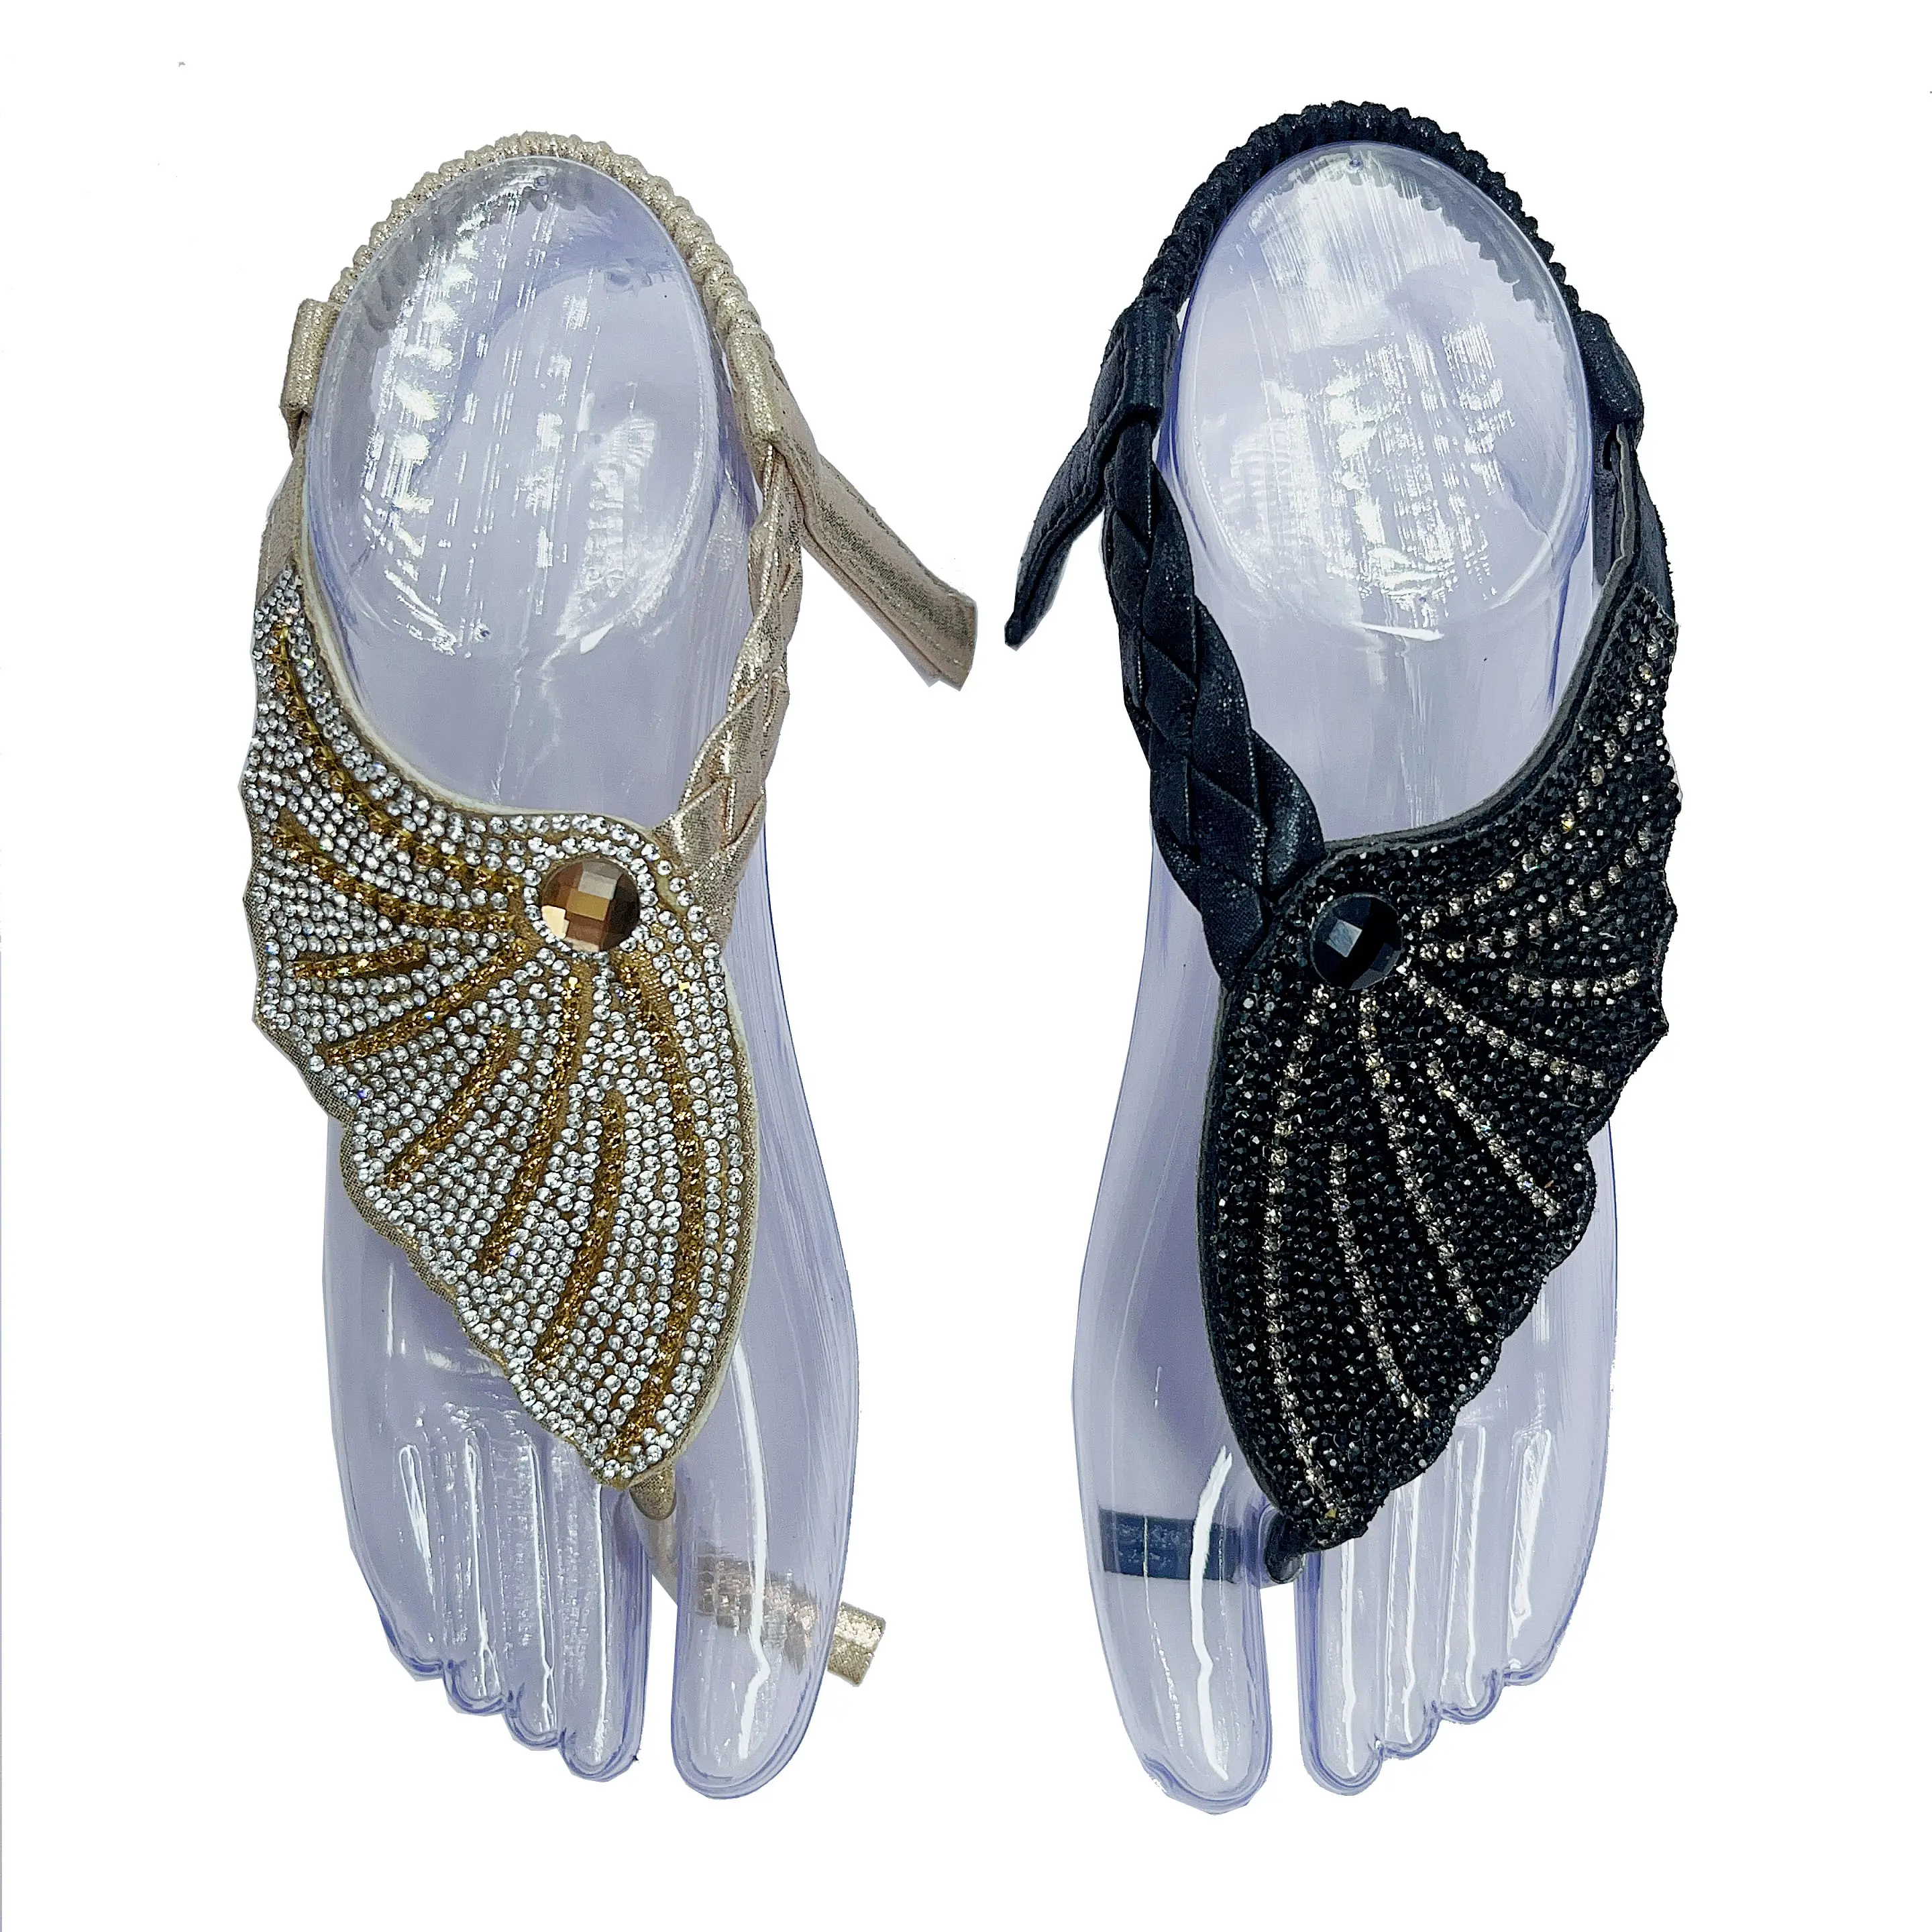 Glorious semi-fini à la main diamant design chaussures supérieur brillant strass PU matériel fleur comme la sandale des femmes supérieure